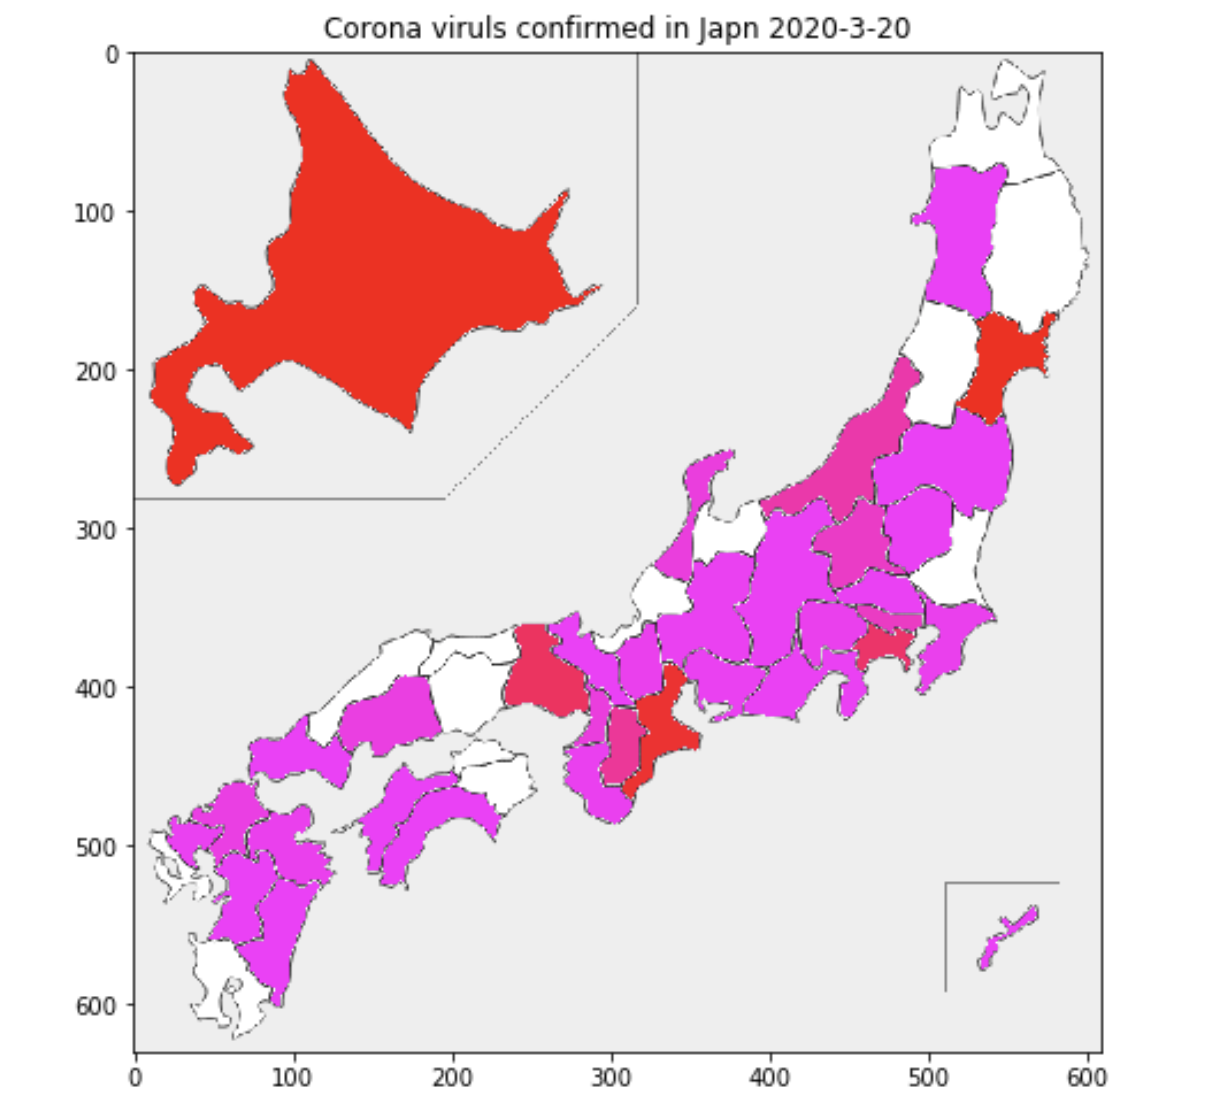 コロナウィルス感染状況をJapanmapで可視化